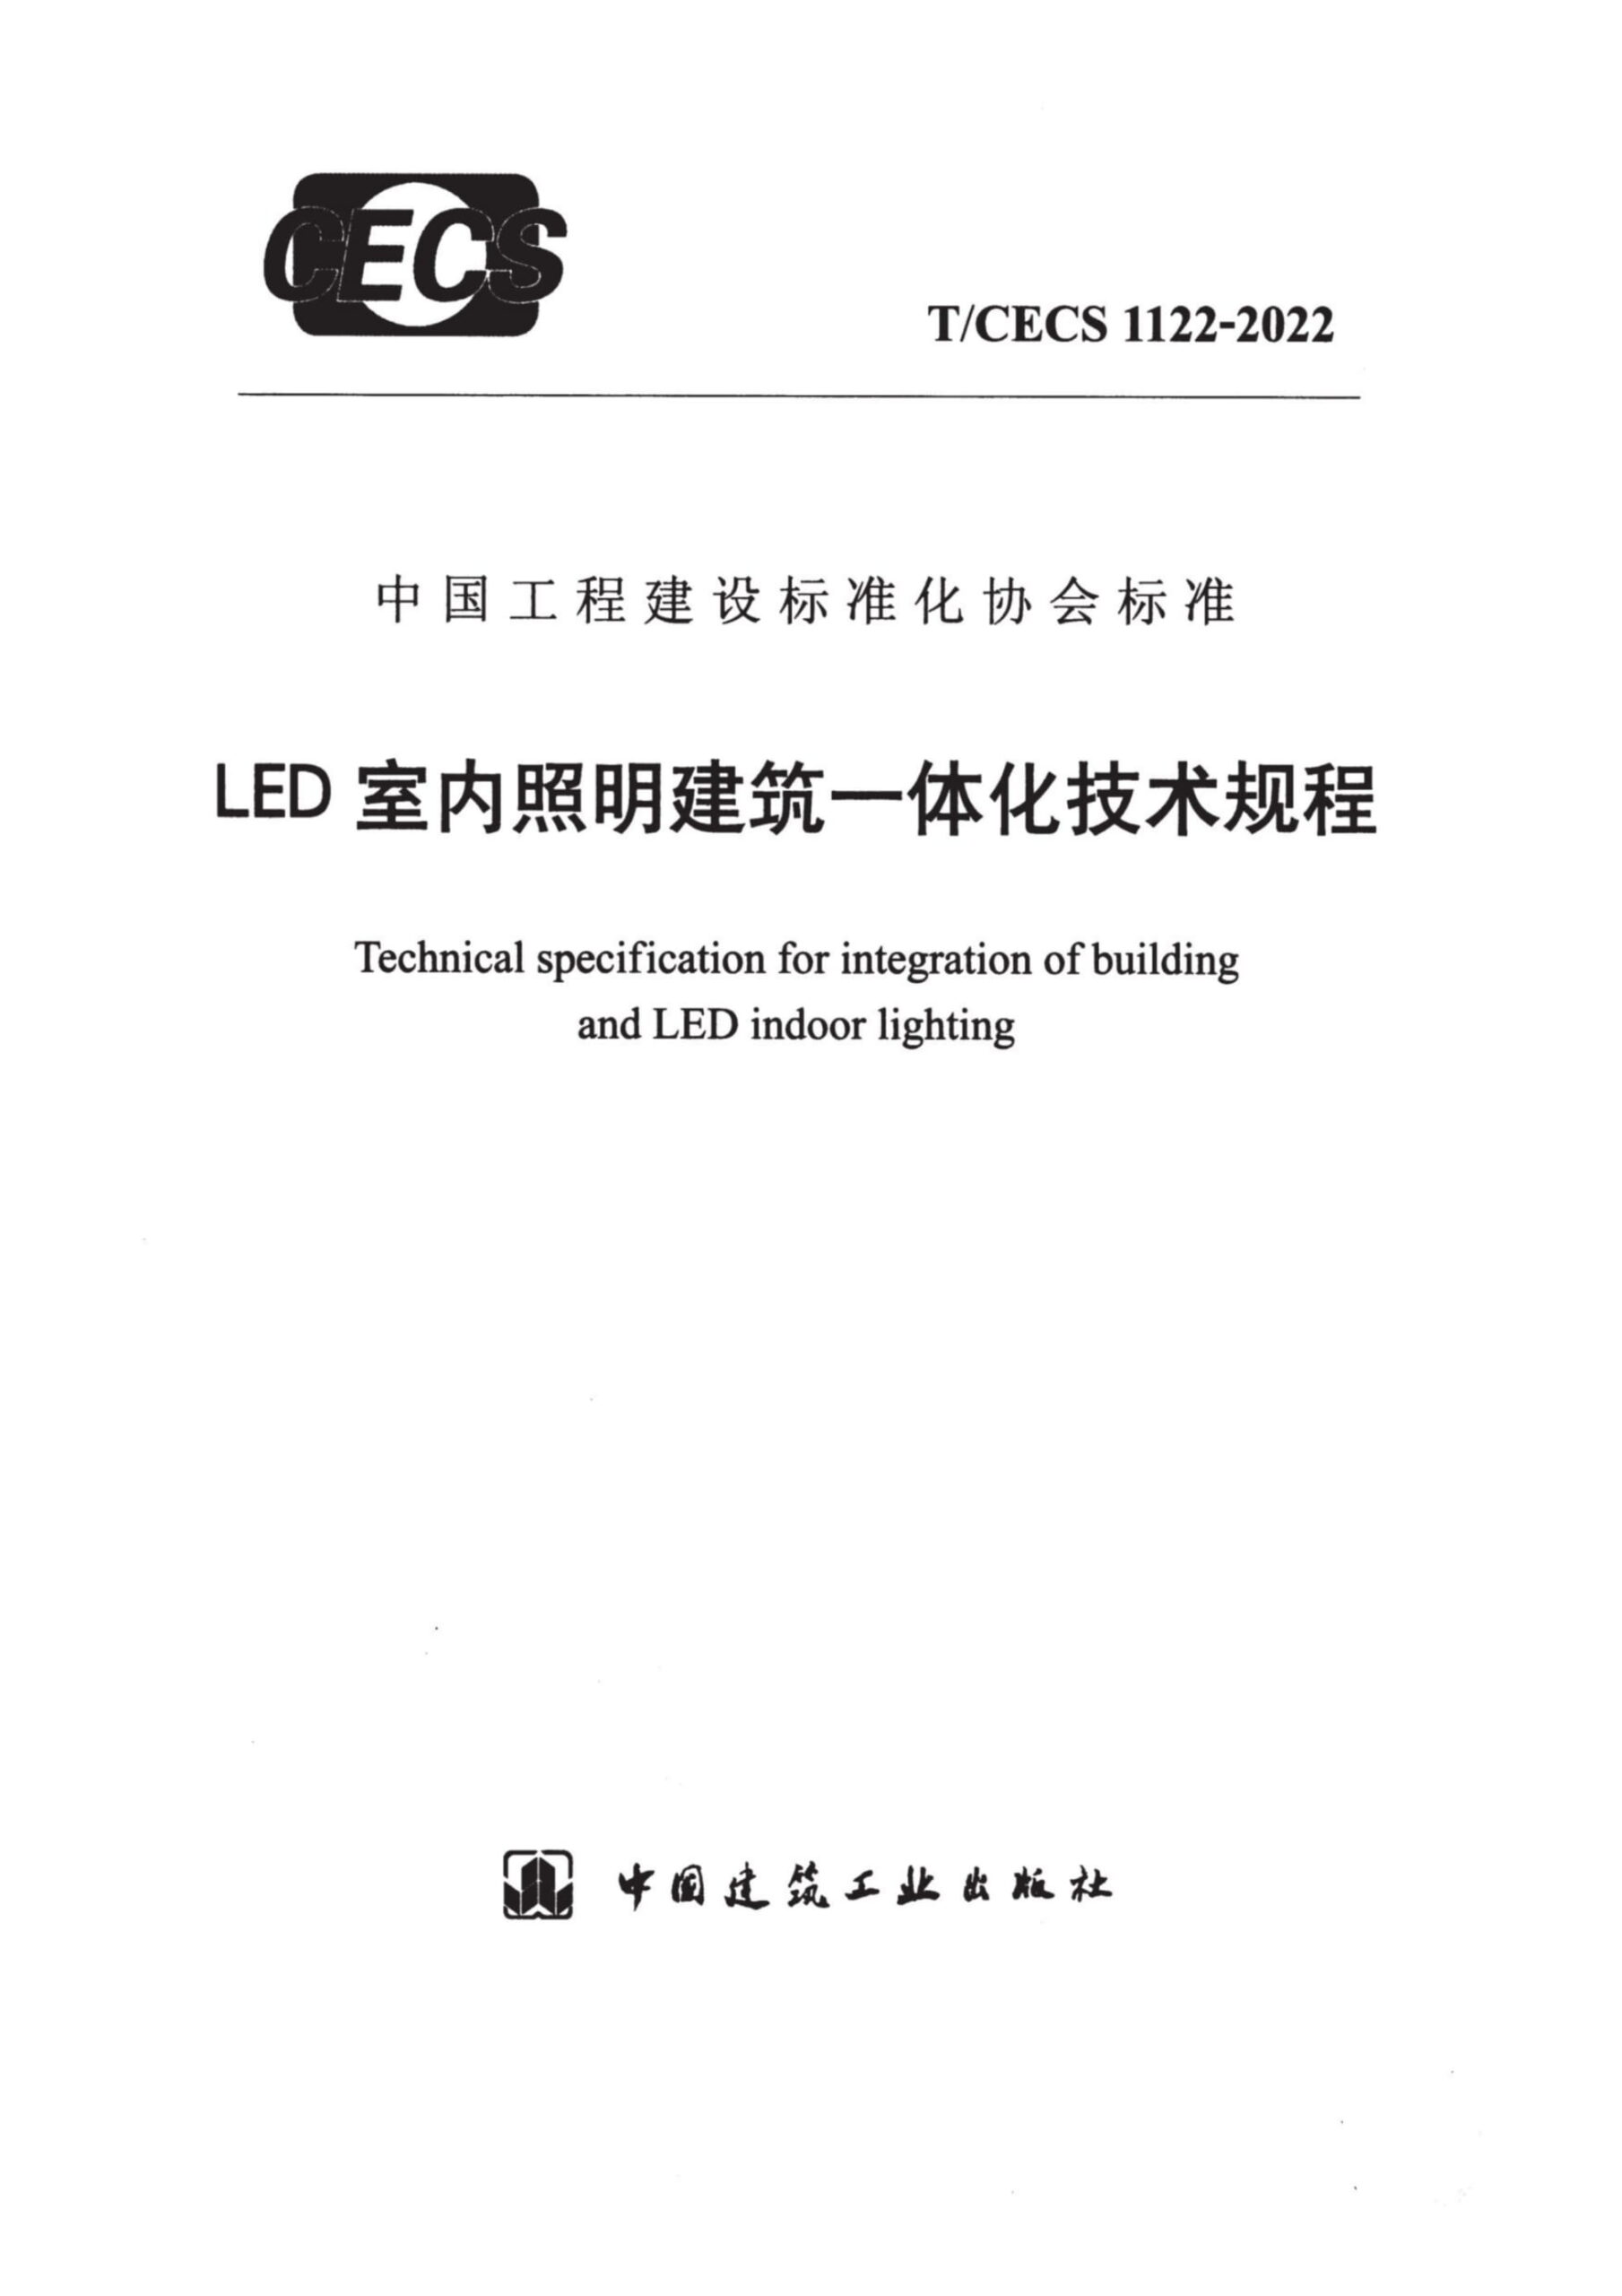 T/CECS 1122-2022 LED室内照明建筑一体化技术规程